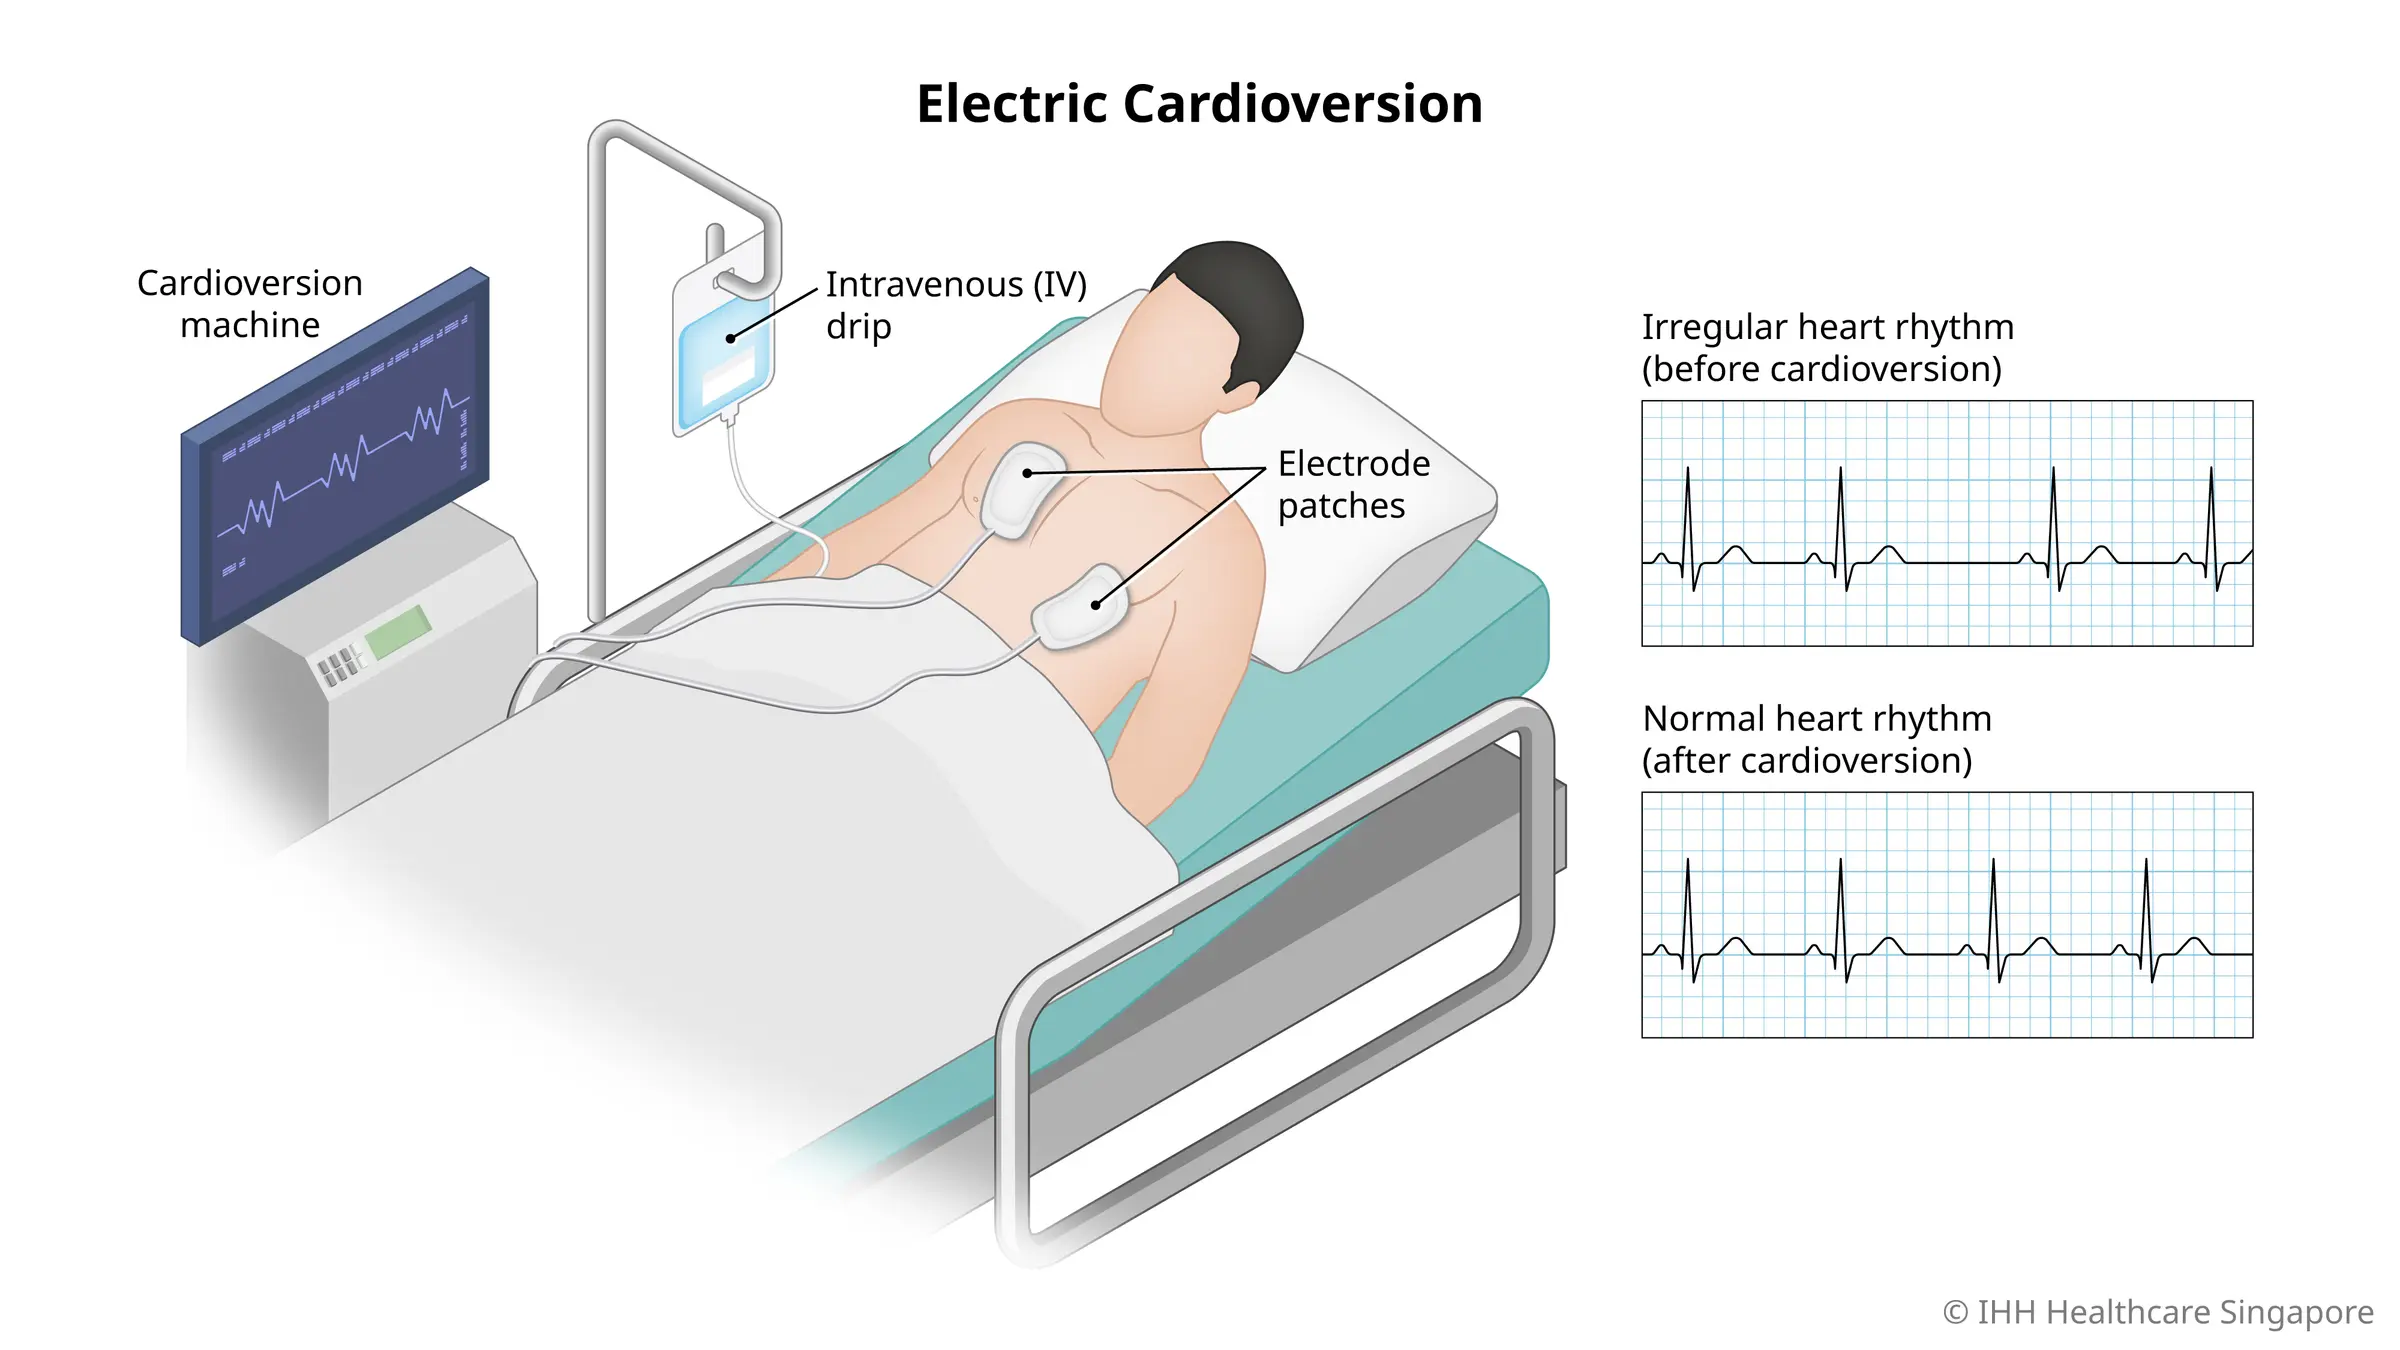 Kardioversi listrik menggunakan elektrode tempel untuk mengalirkan kejut listrik ke jantung guna memperbaiki irama jantung tak teratur. 